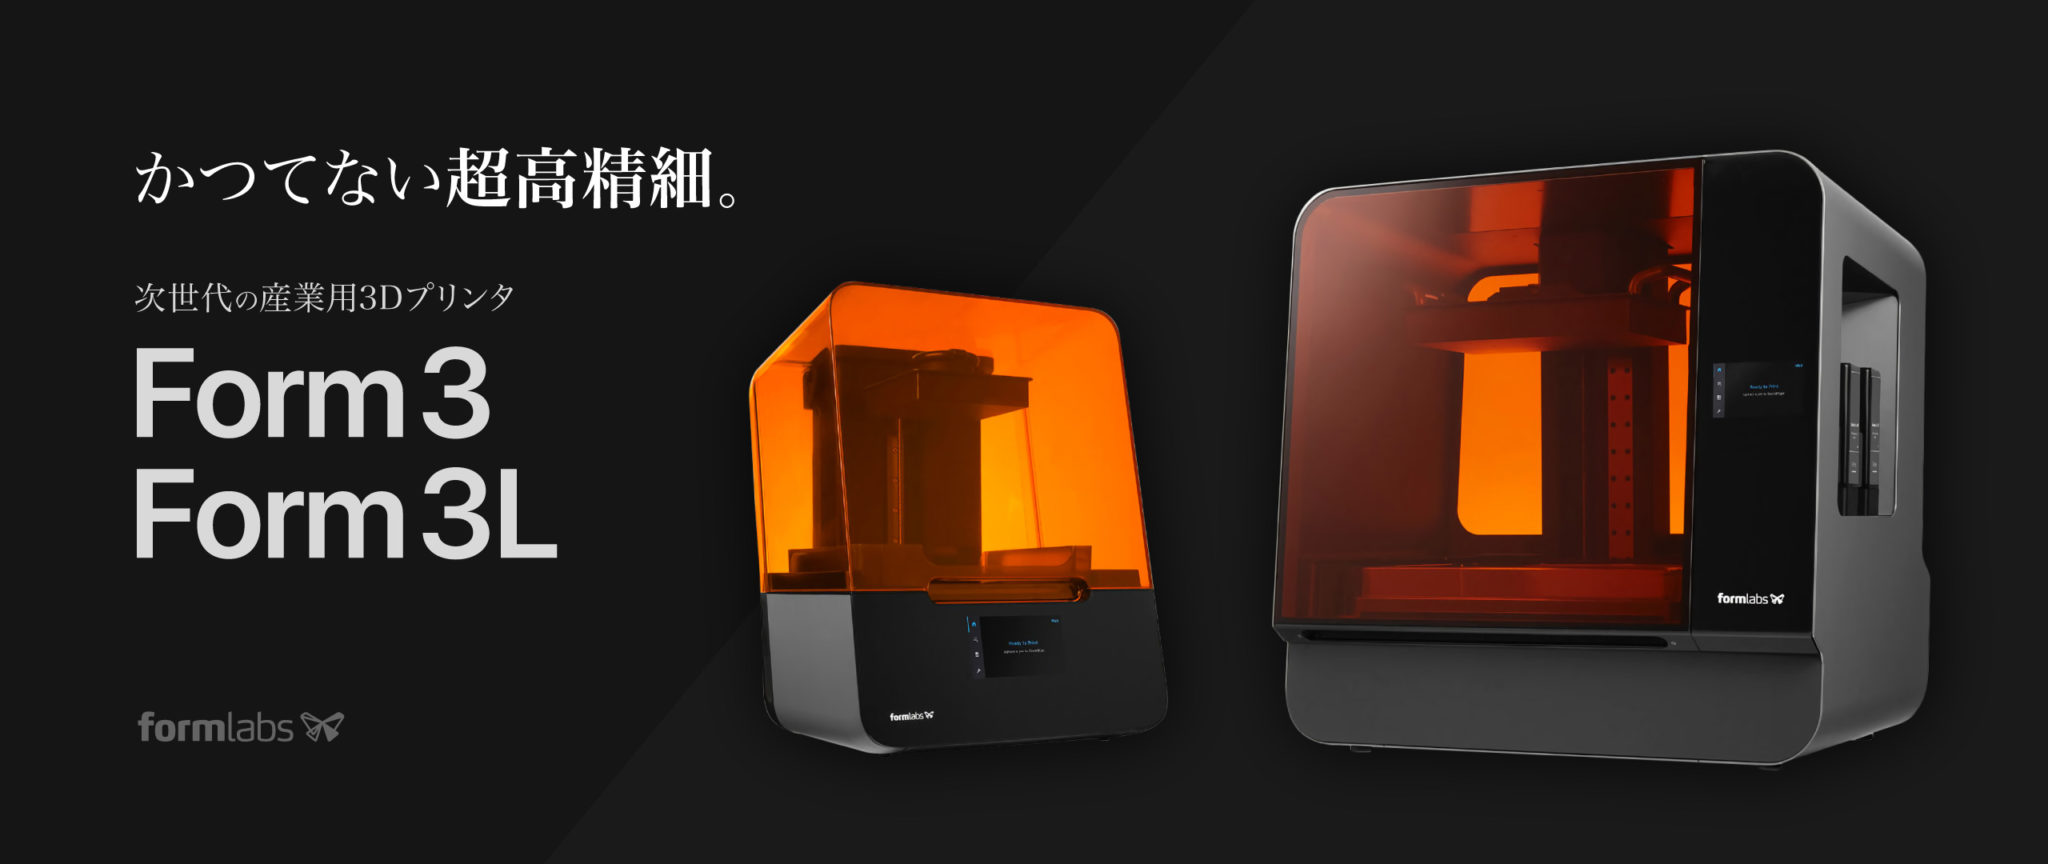 Form 3 / Form 3L - 超高精細 光造形3Dプリンタのご購入を検討の方